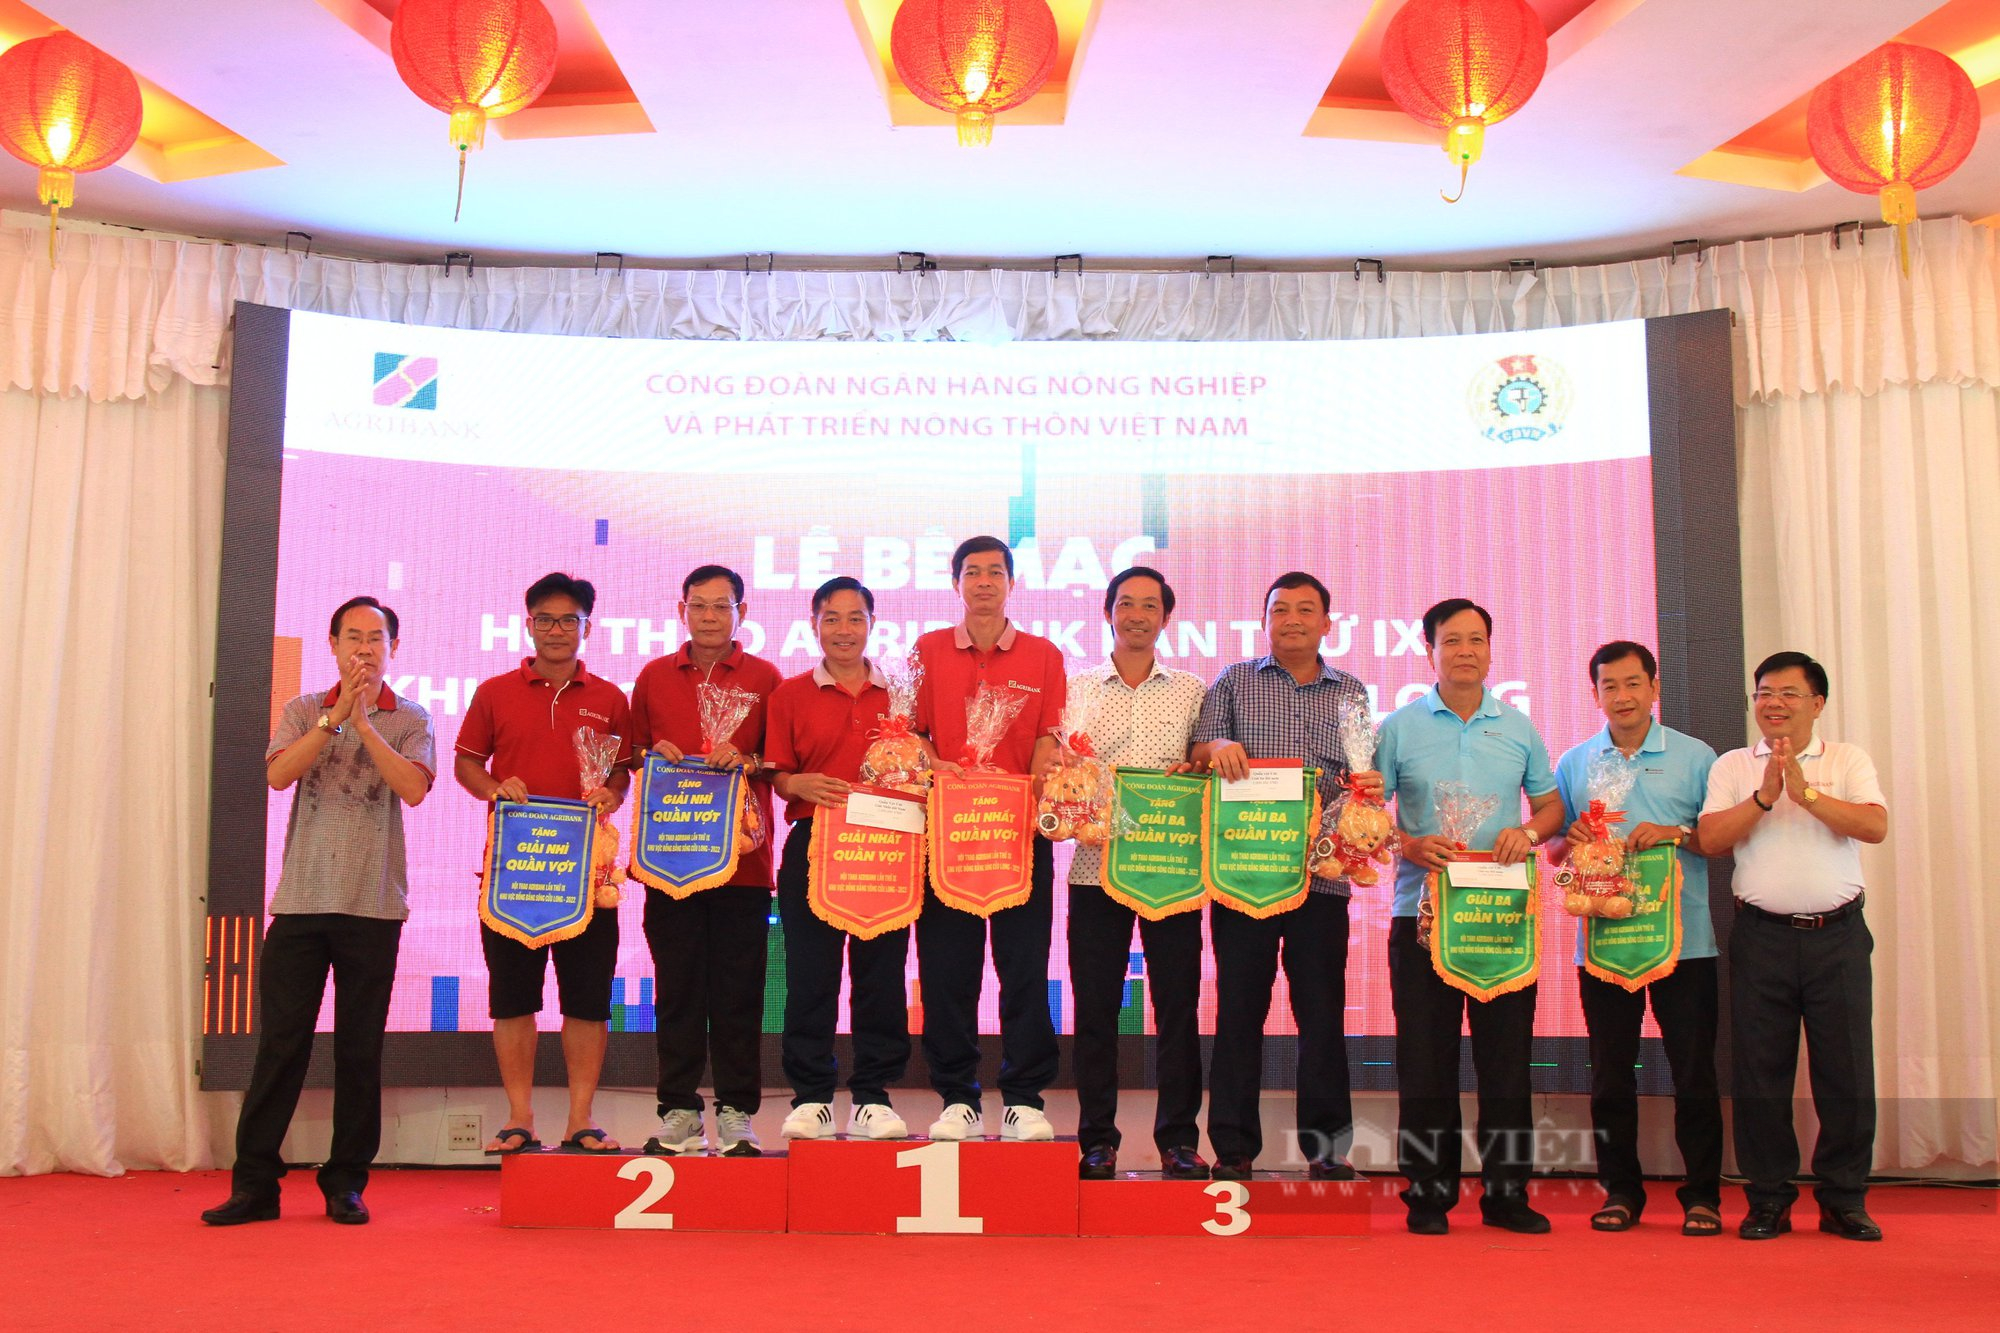 Đoàn Agribank chi nhánh An Giang giành giải Nhất toàn đoàn tại Hội thao Agribank lần thứ IX khu vực ĐBSCL - Ảnh 6.